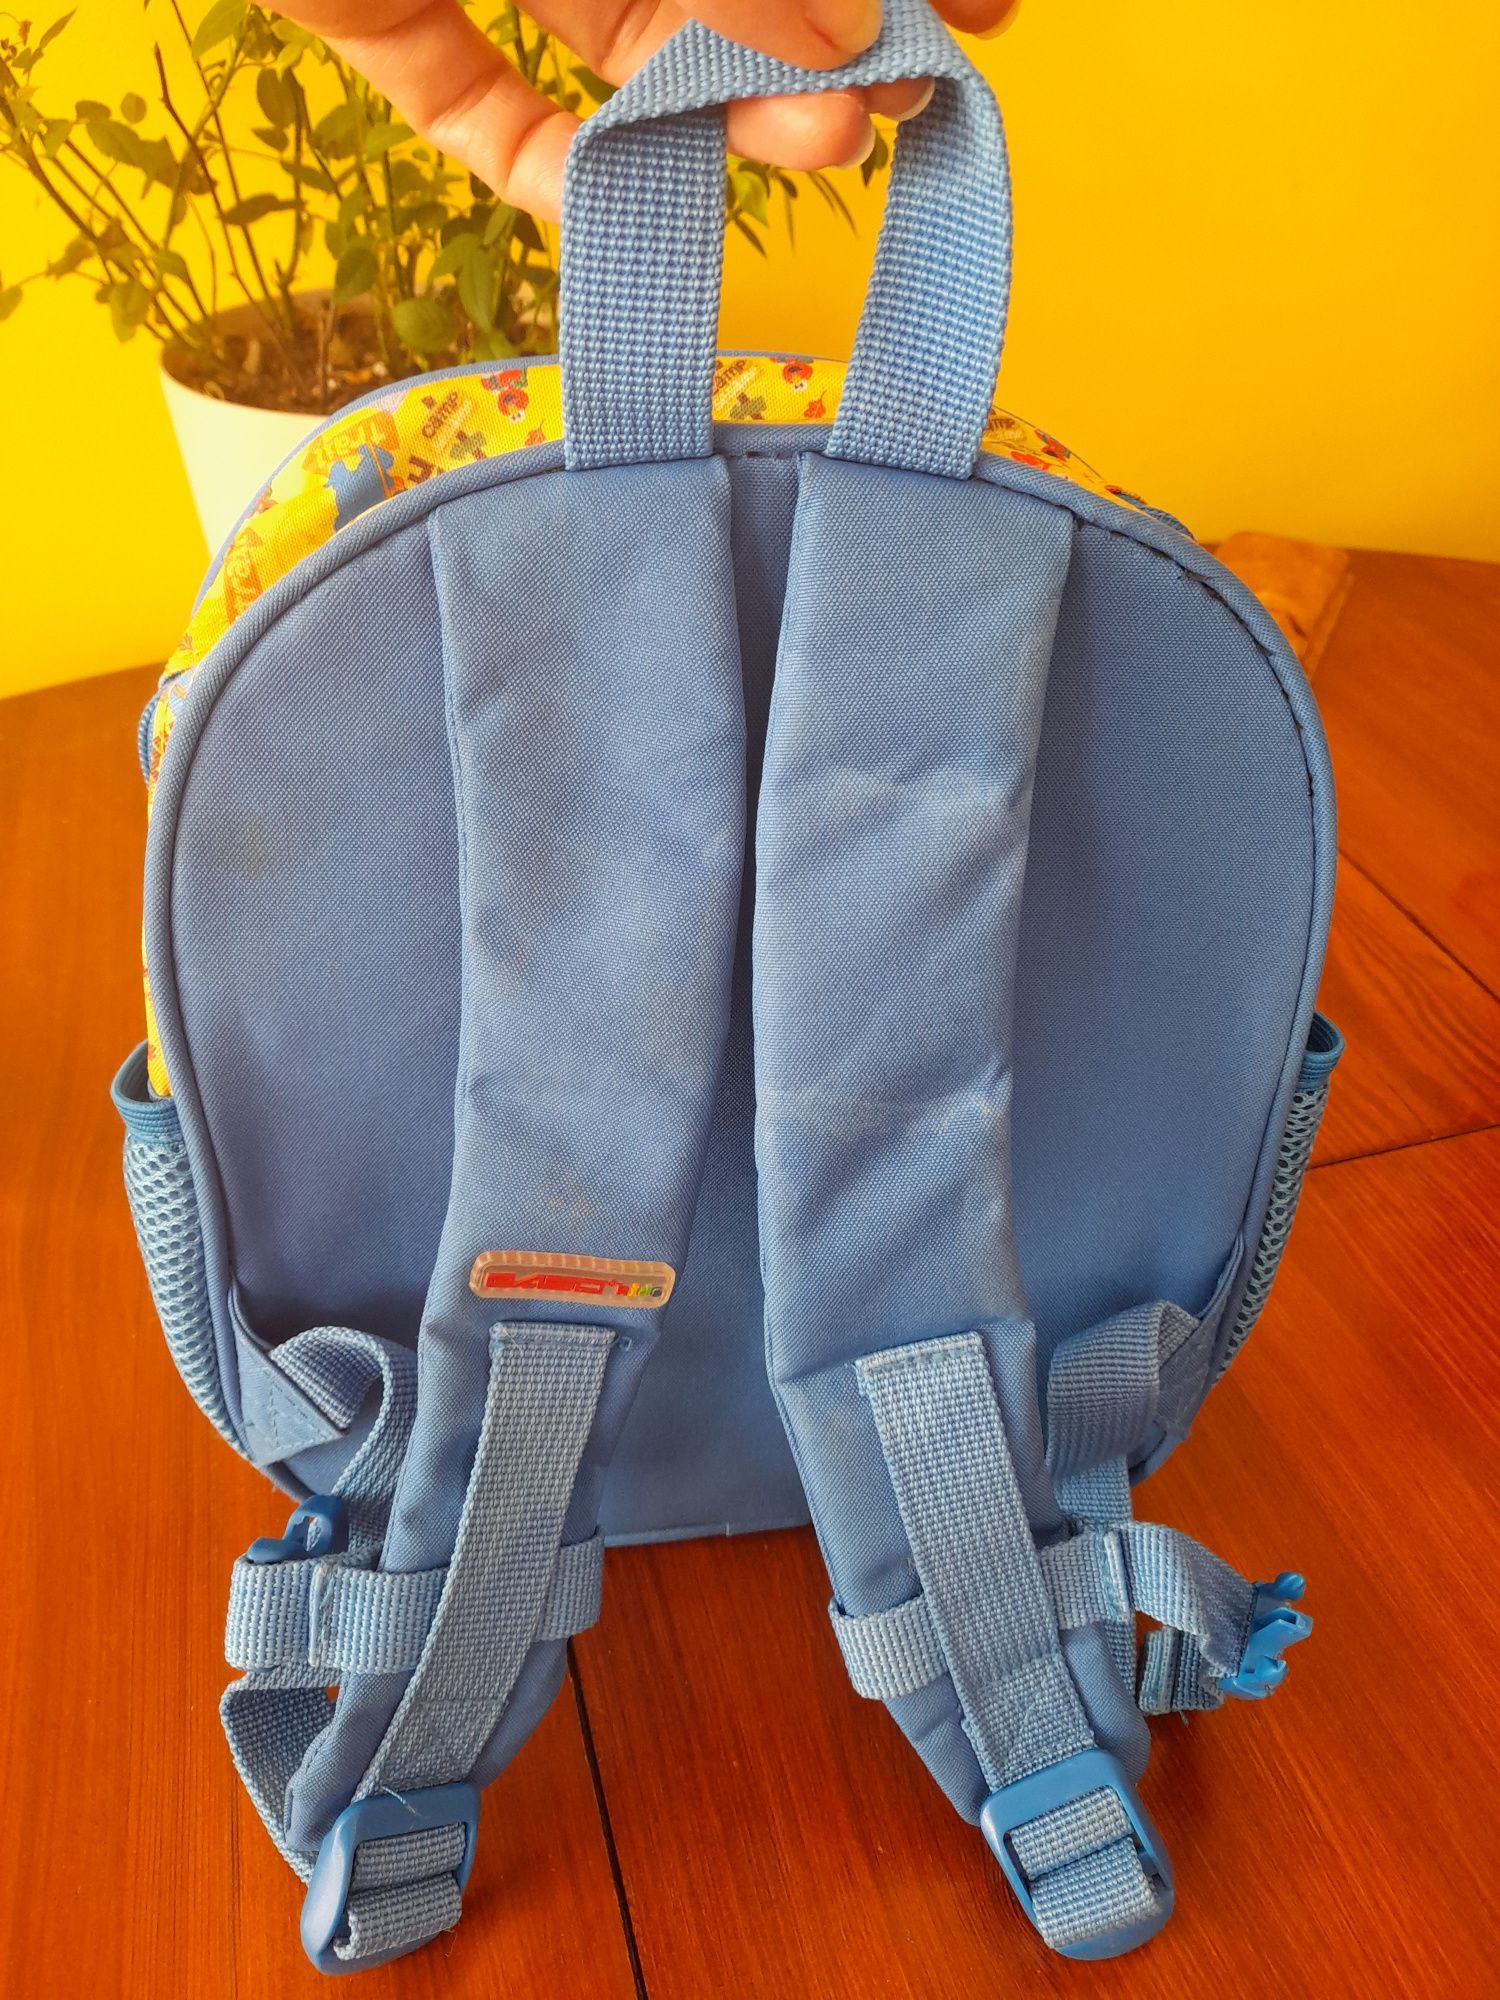 Plecak Elmo dla przedszkolaka